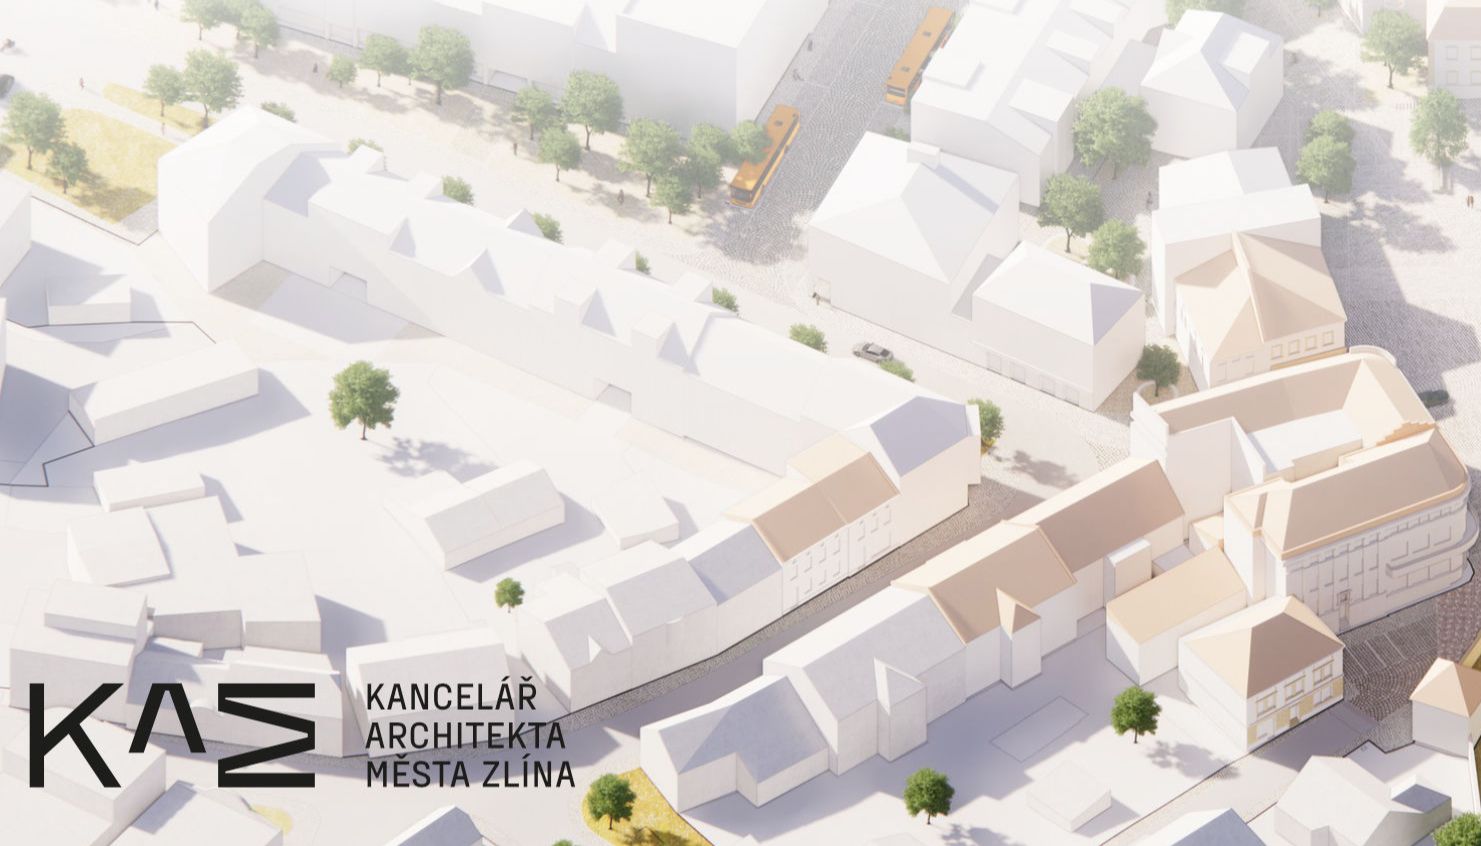 Kancelář architekta města Zlína zve na přednášku Plánování města